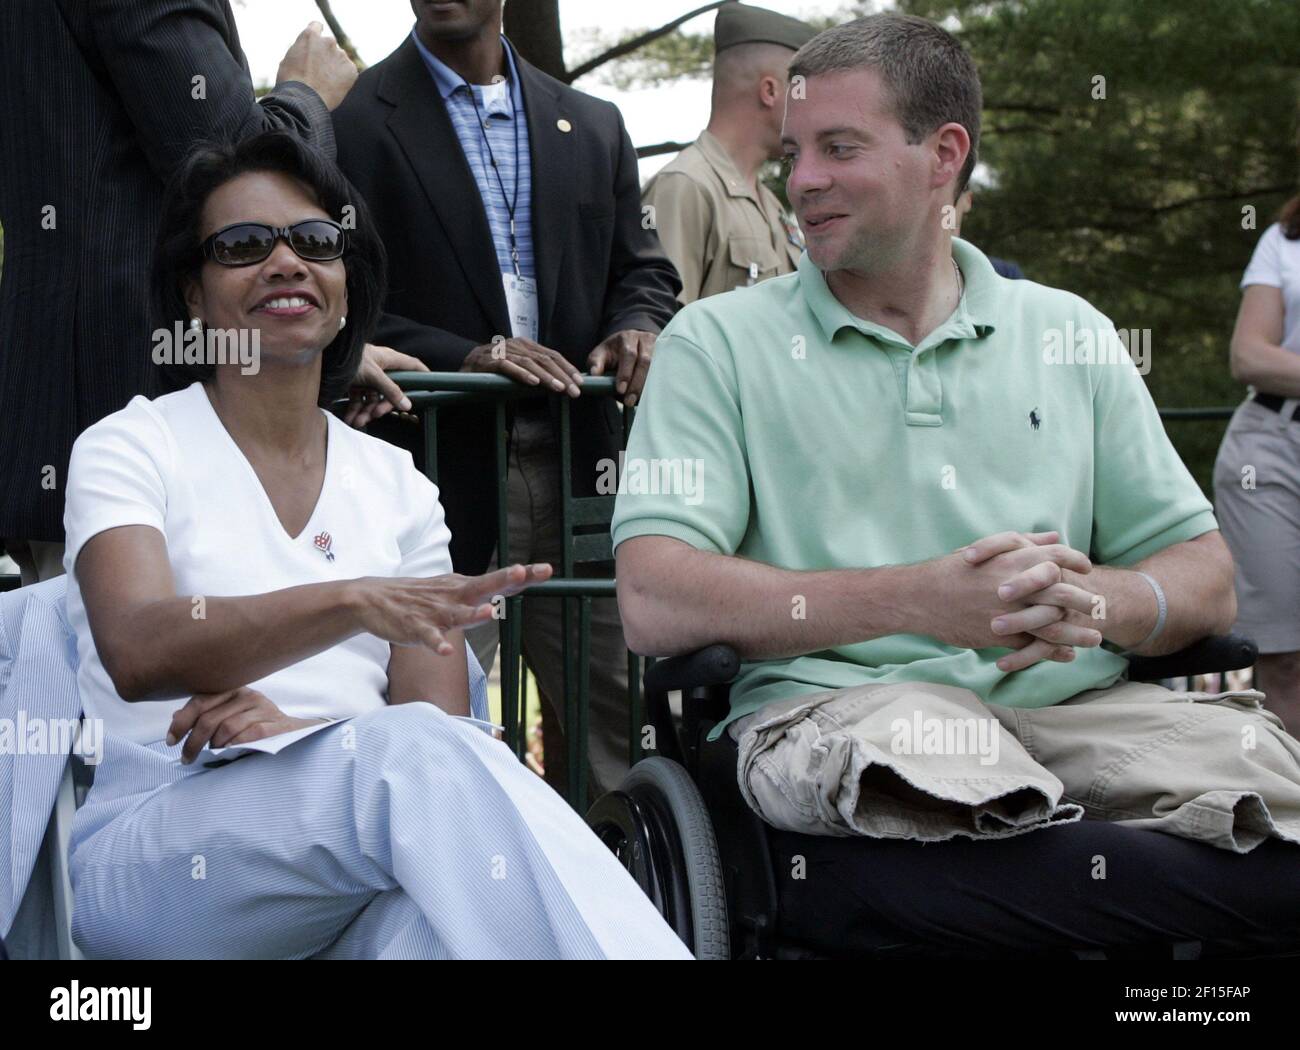 US-Außenministerin Condoleezza Rice spricht mit dem US Marine Lance Corporal Josh Bleill, der im Irak schwer verletzt wurde, während sie die zweite Runde des AT&T National Turniers vom 16th-Loch im Congressional Country Club in Bethesda, Maryland, am Freitag, den 6. Juli 2007 beobachten. (Foto von Saul Loeb/MCT/Sipa USA) Stockfoto